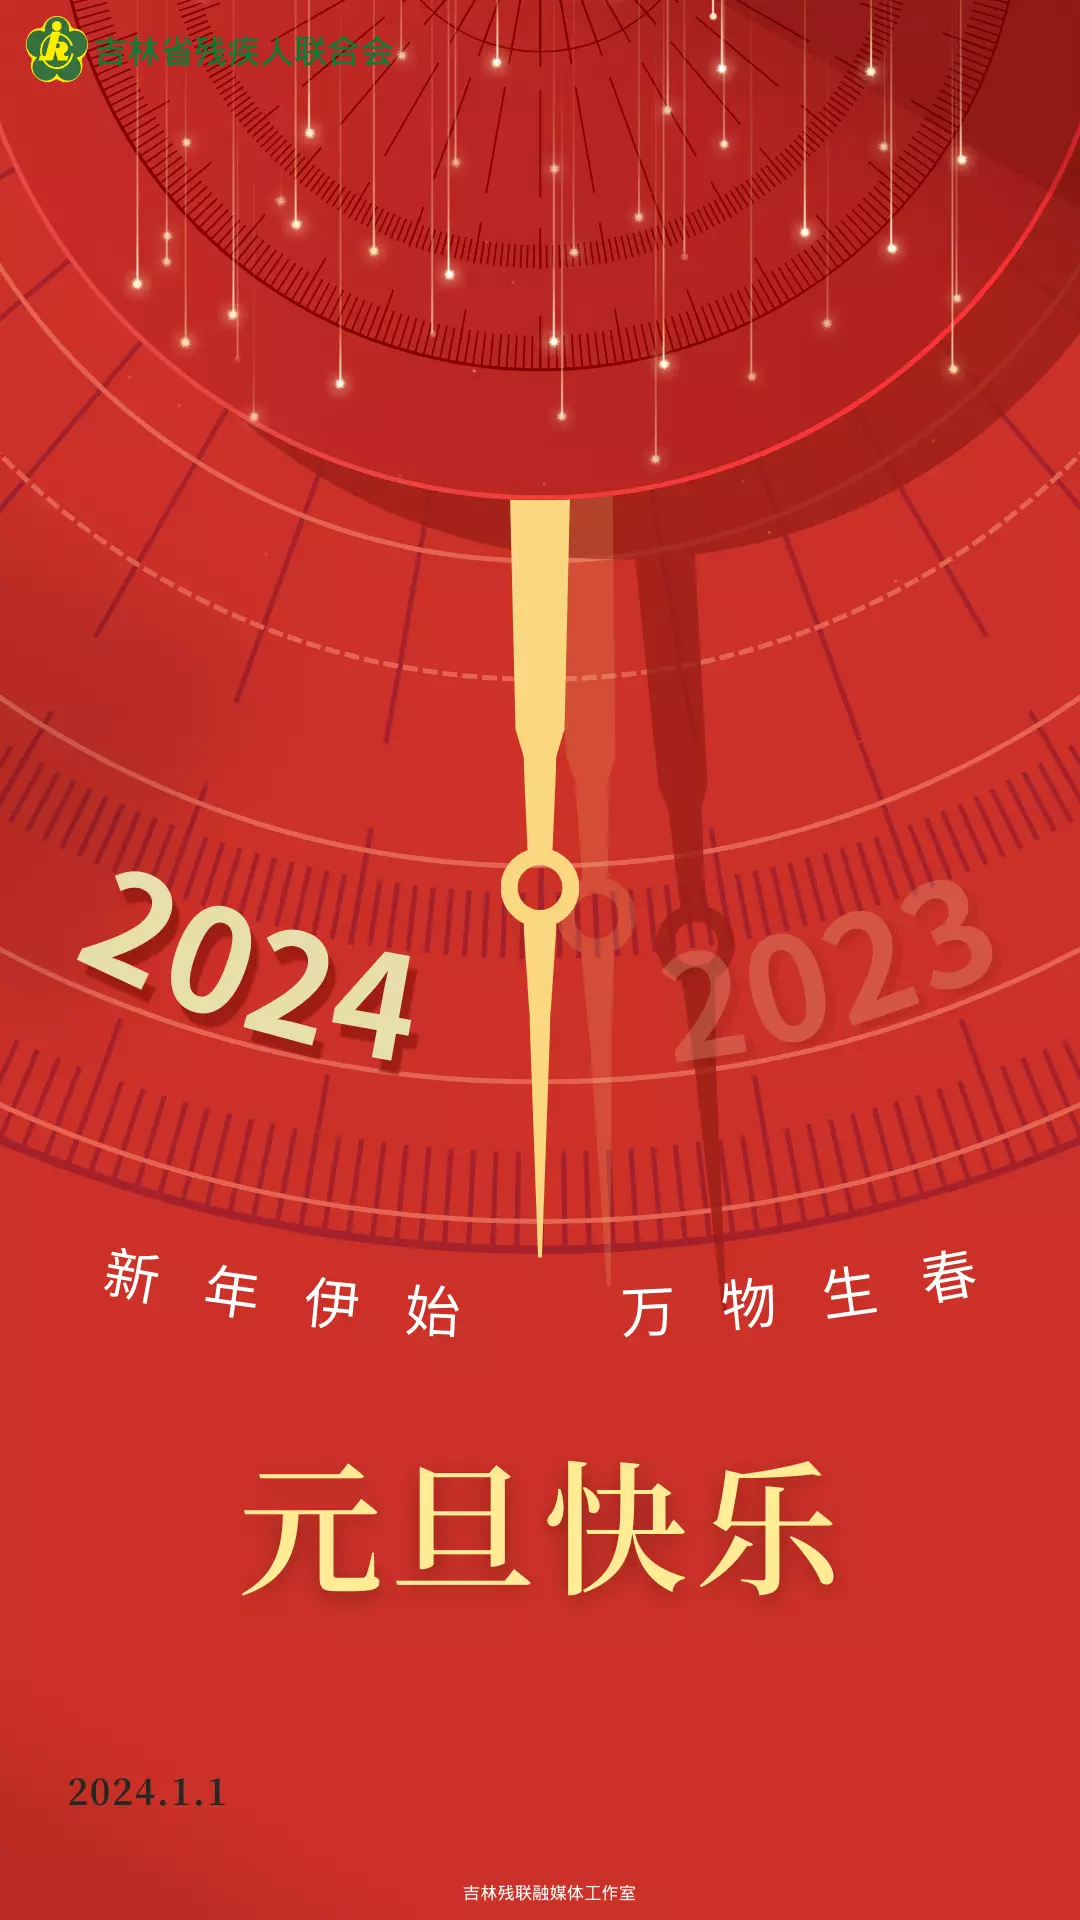 2022日历全年表a4_2024年日历表全年一页_日历2041全年日历表